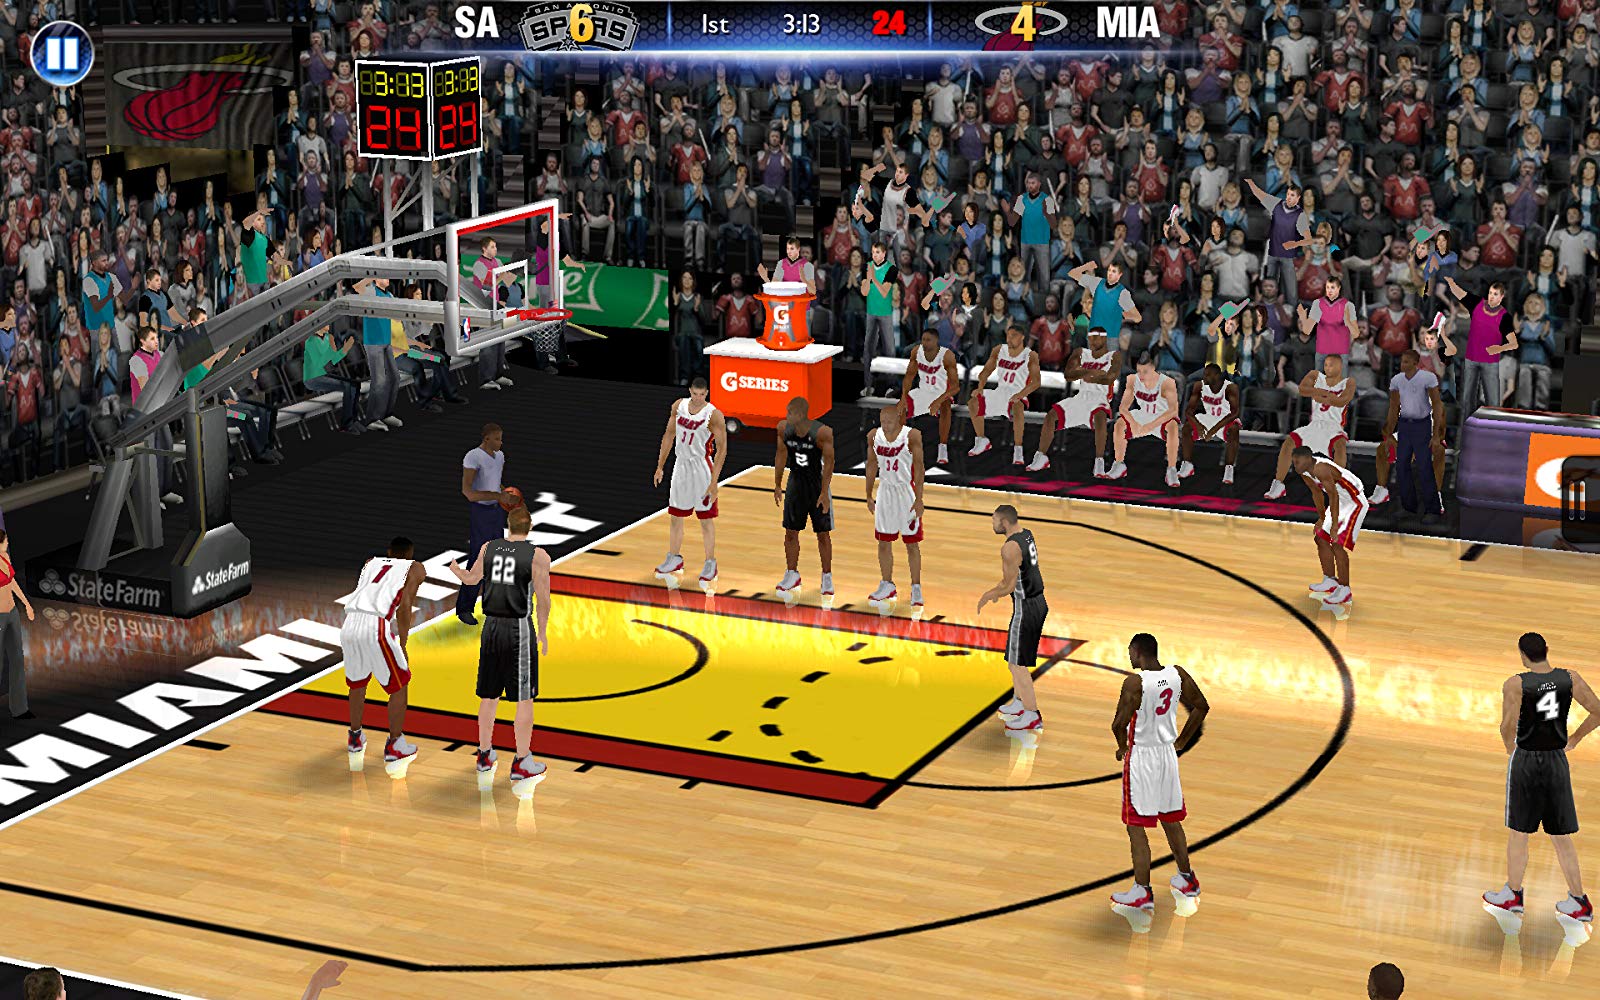 NBA 2K14 | Apkplaygame.com